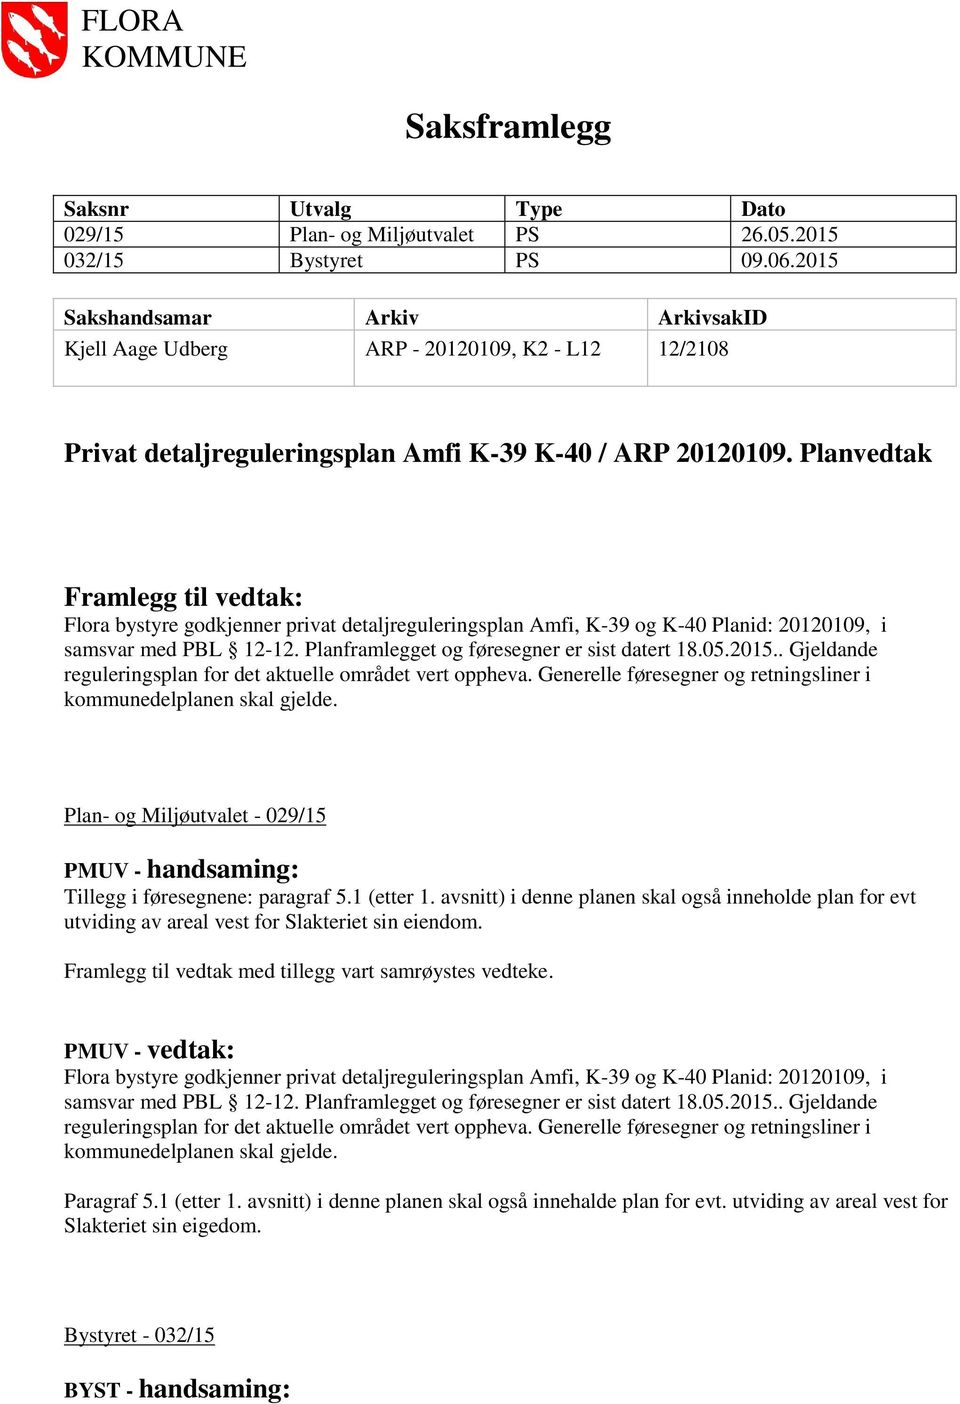 Planvedtak Framlegg til vedtak: Plan- og Miljøutvalet - 029/15 PMUV - handsaming: Tillegg i føresegnene: paragraf 5.1 (etter 1.